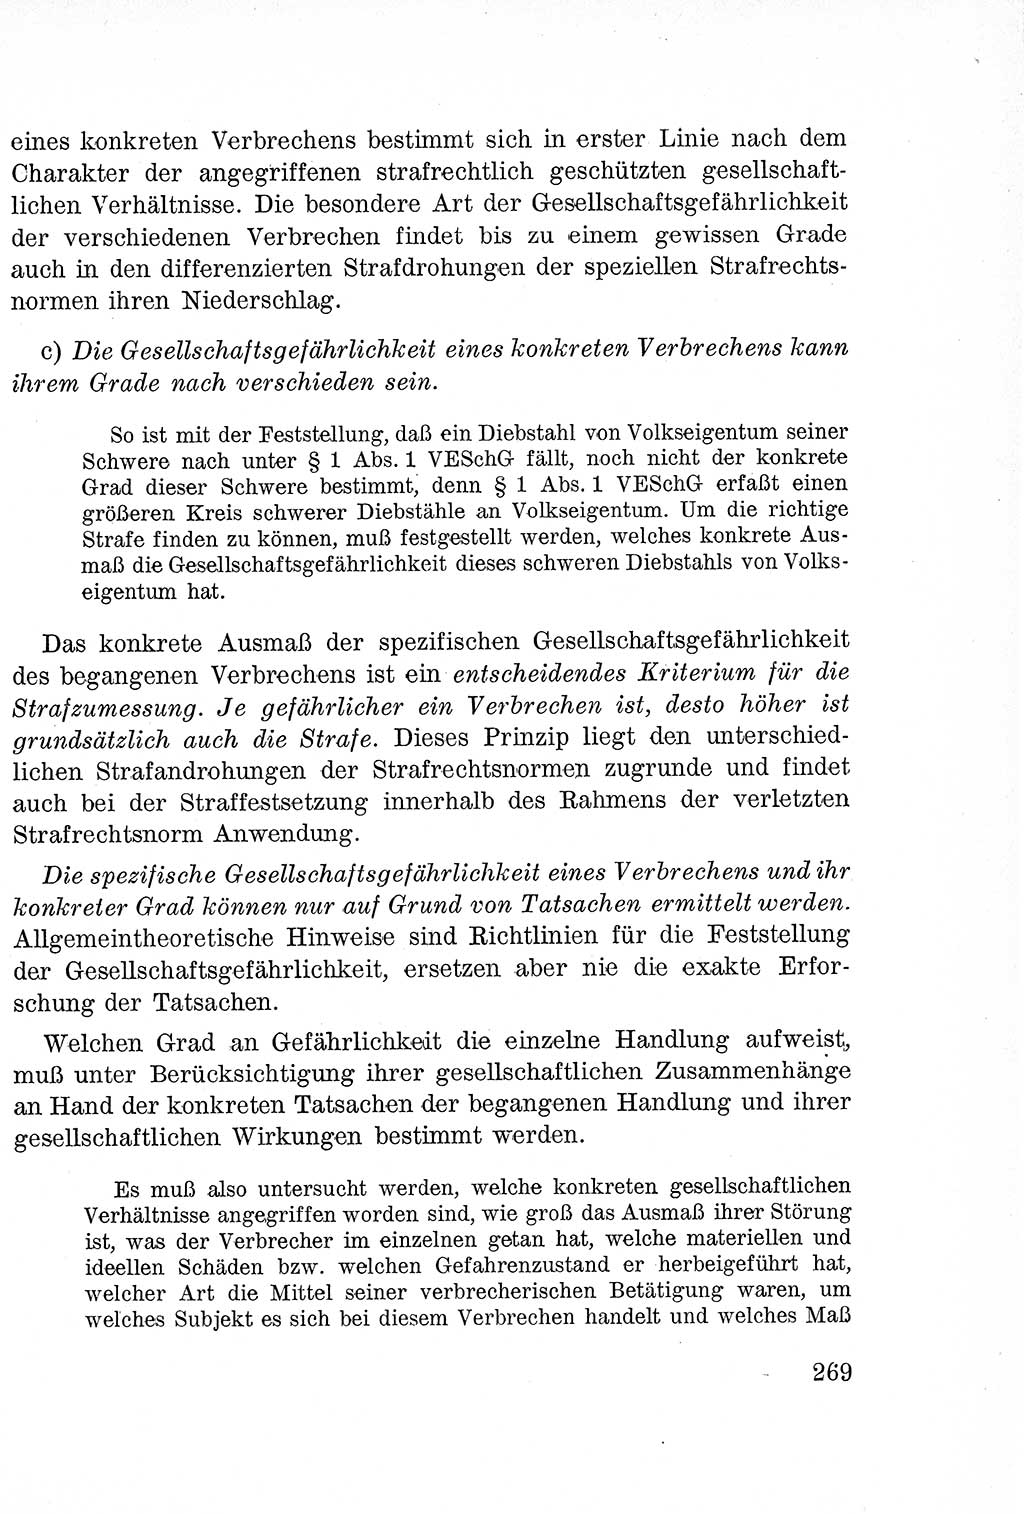 Lehrbuch des Strafrechts der Deutschen Demokratischen Republik (DDR), Allgemeiner Teil 1957, Seite 269 (Lb. Strafr. DDR AT 1957, S. 269)